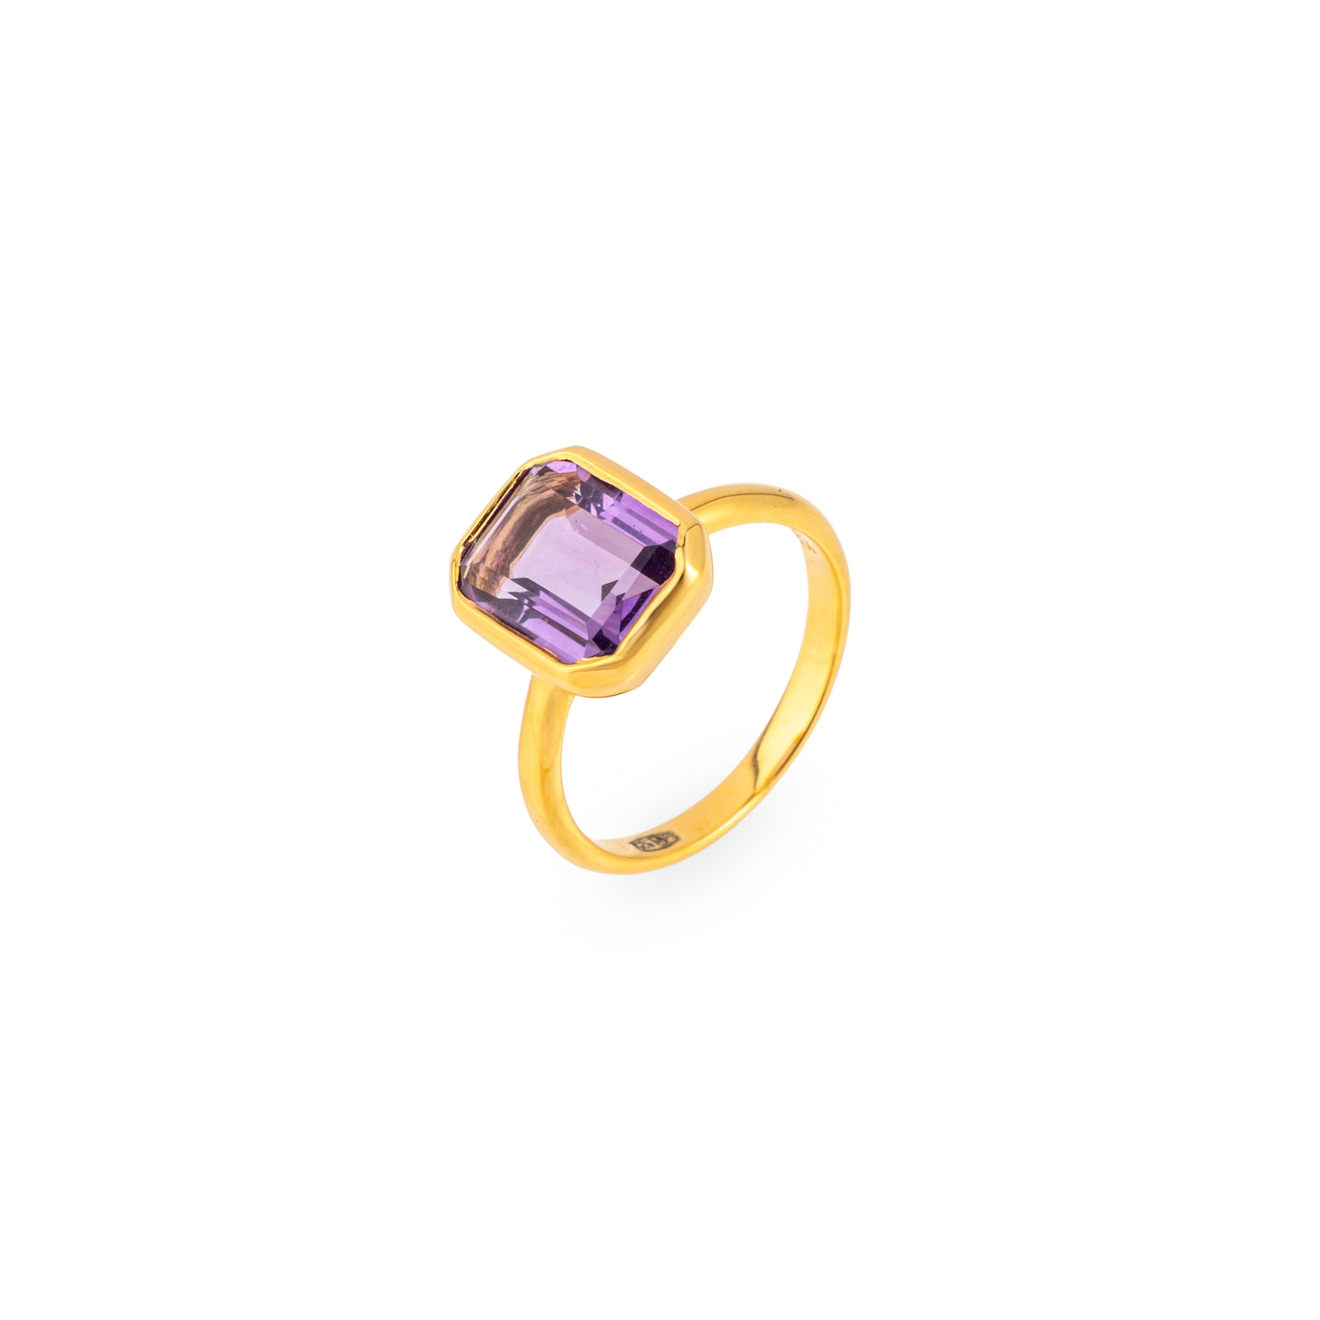 Wisteria Gems Позолоченное кольцо с большим прямоугольным аметистом фото